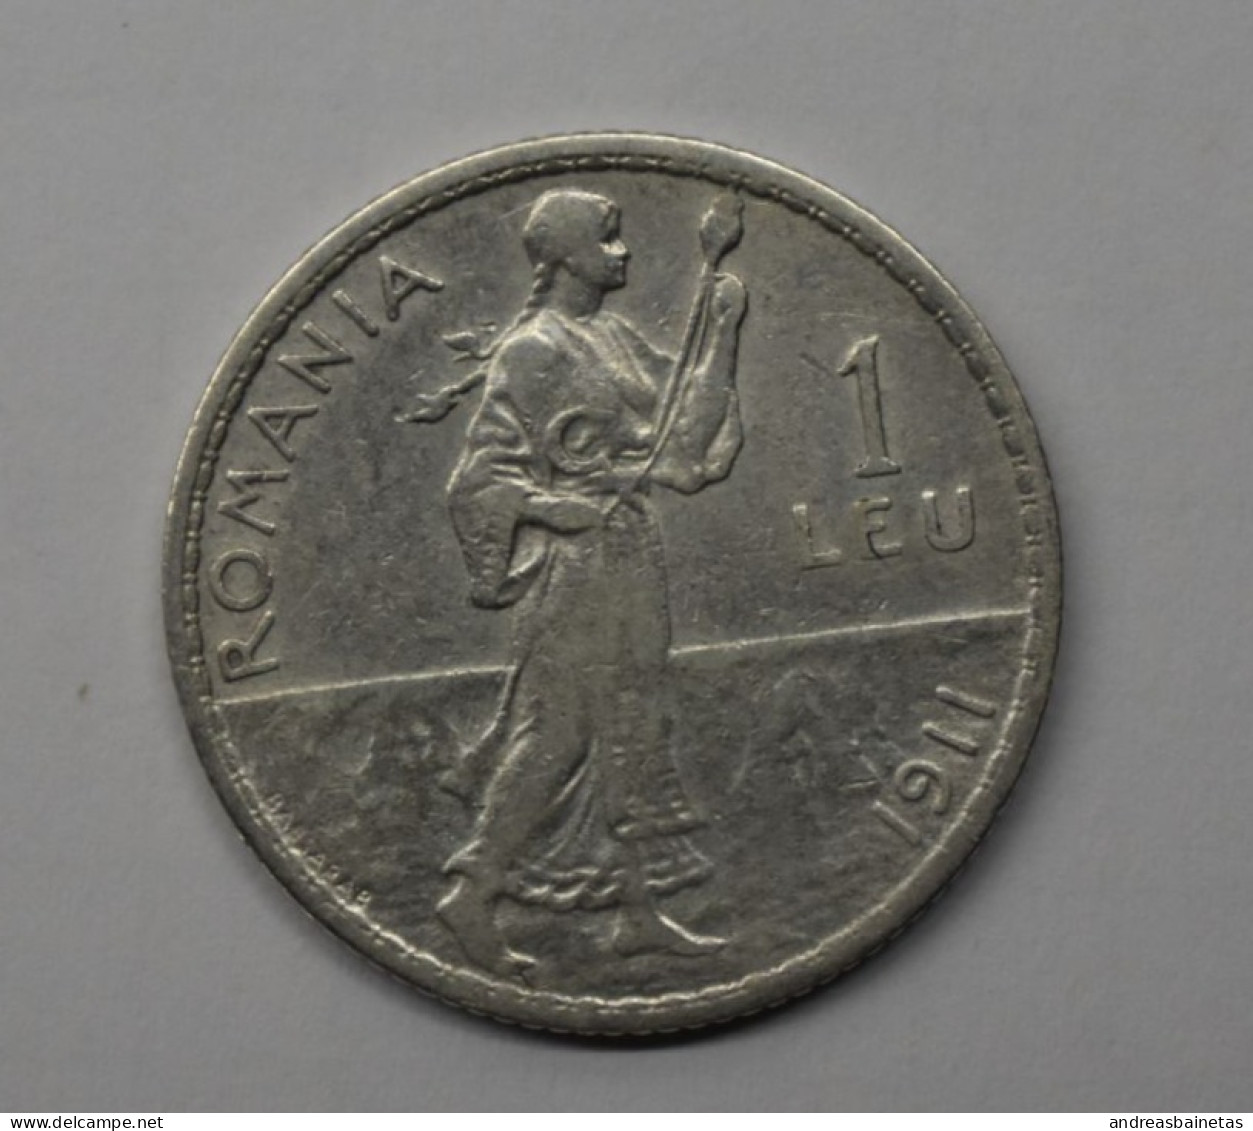 Coins Romania 1 Leu (1911) In Silver 0,835 - Romania